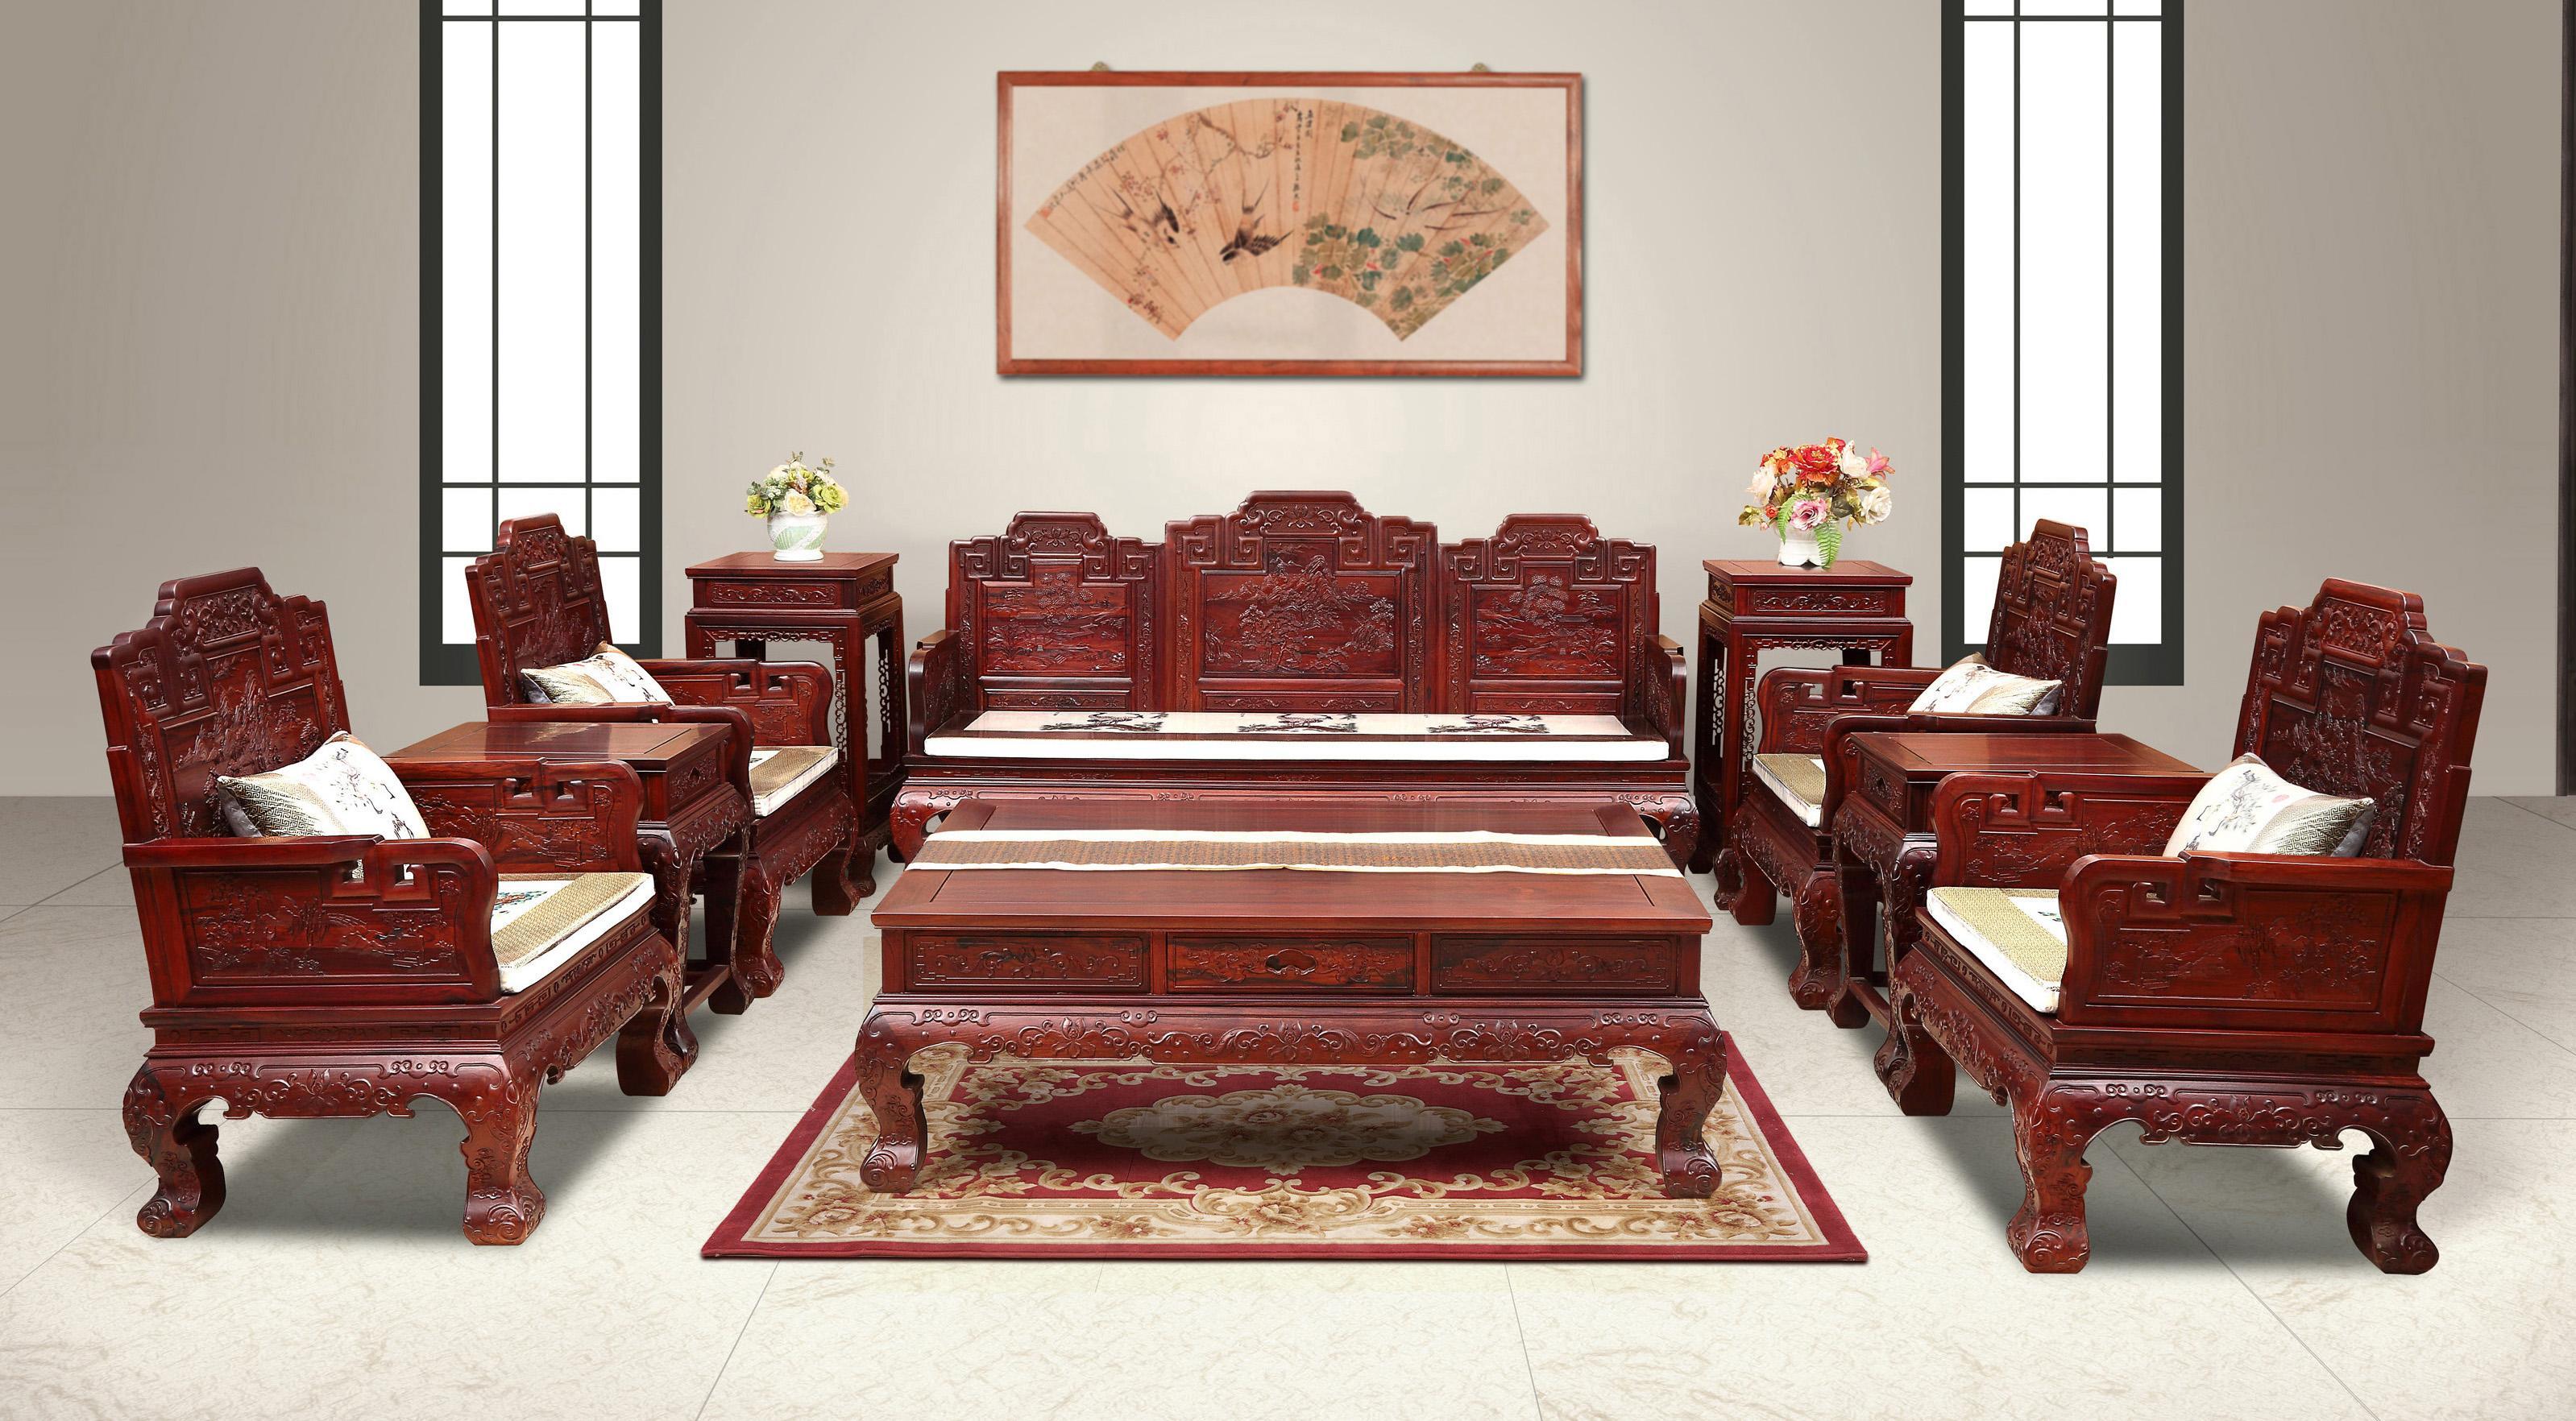 200平米复式新古典红木沙发装修效果图